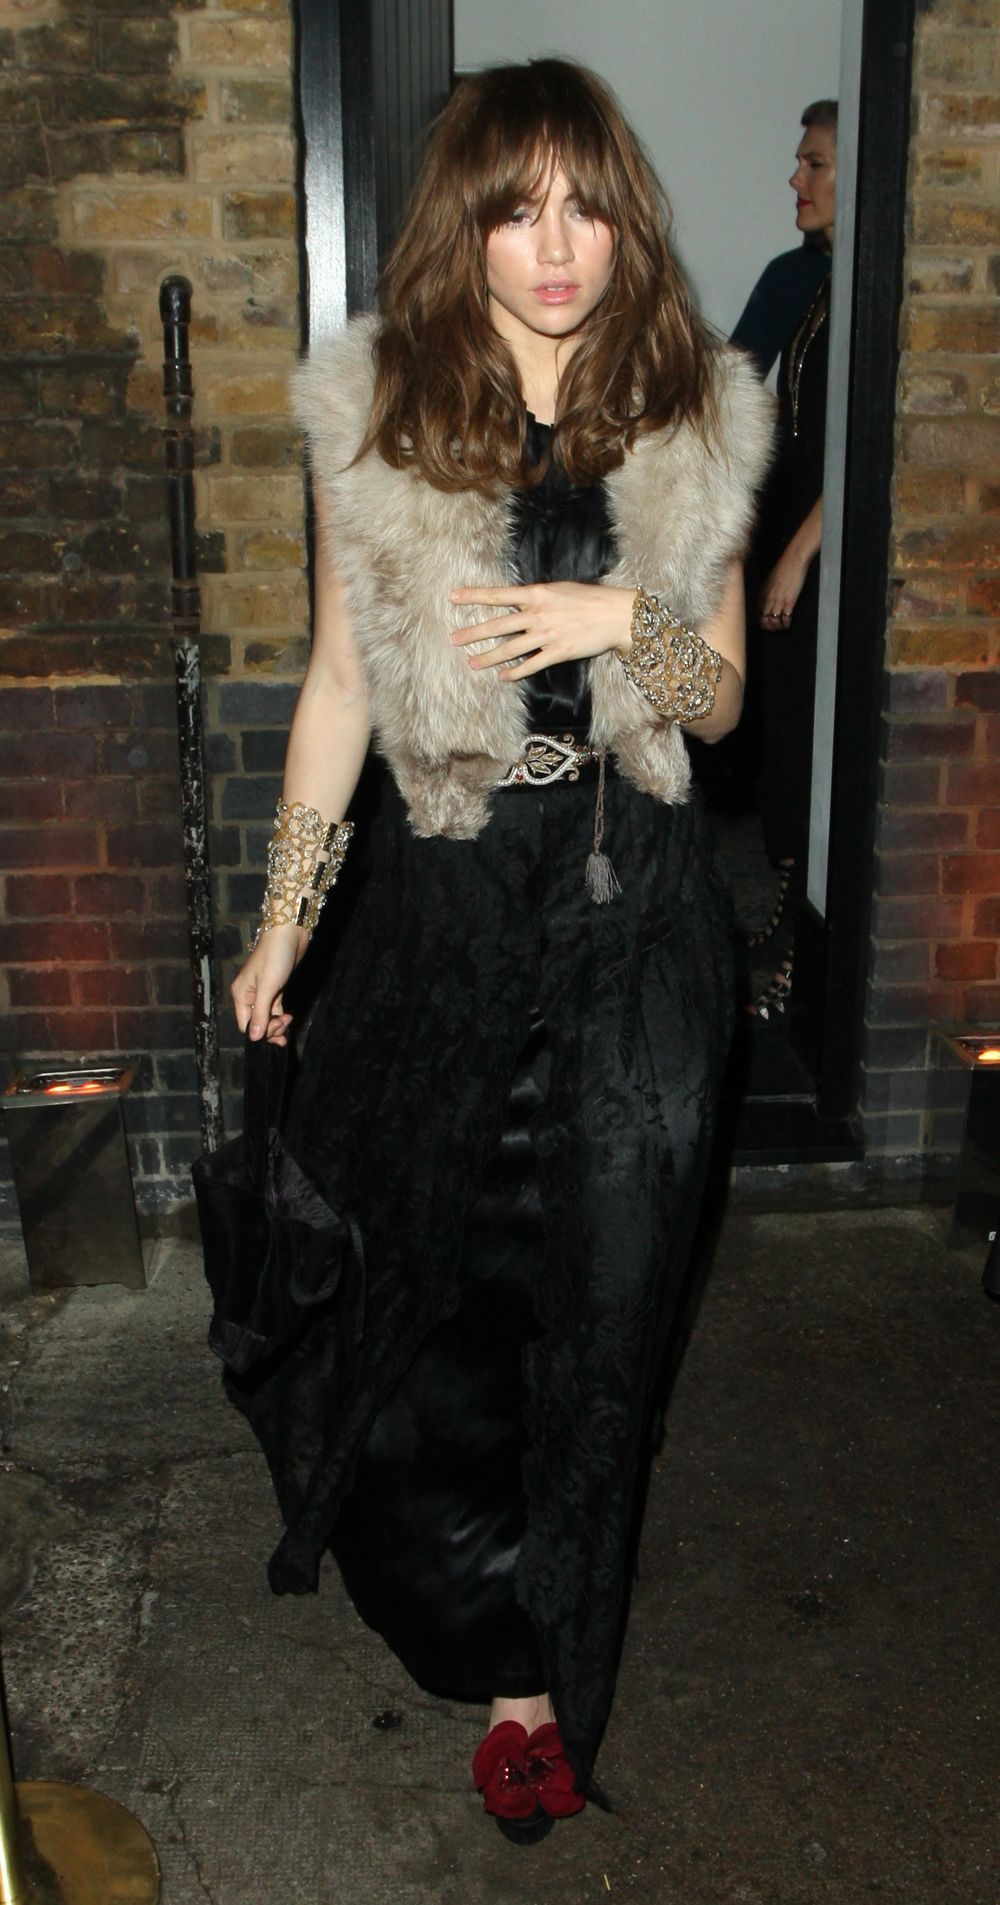 Regina modei din anii 90, Kate Moss, aparitie dezamagitoare. Si-a aratat posteriorul pe covorul rosu, intr-o tinuta vulgara